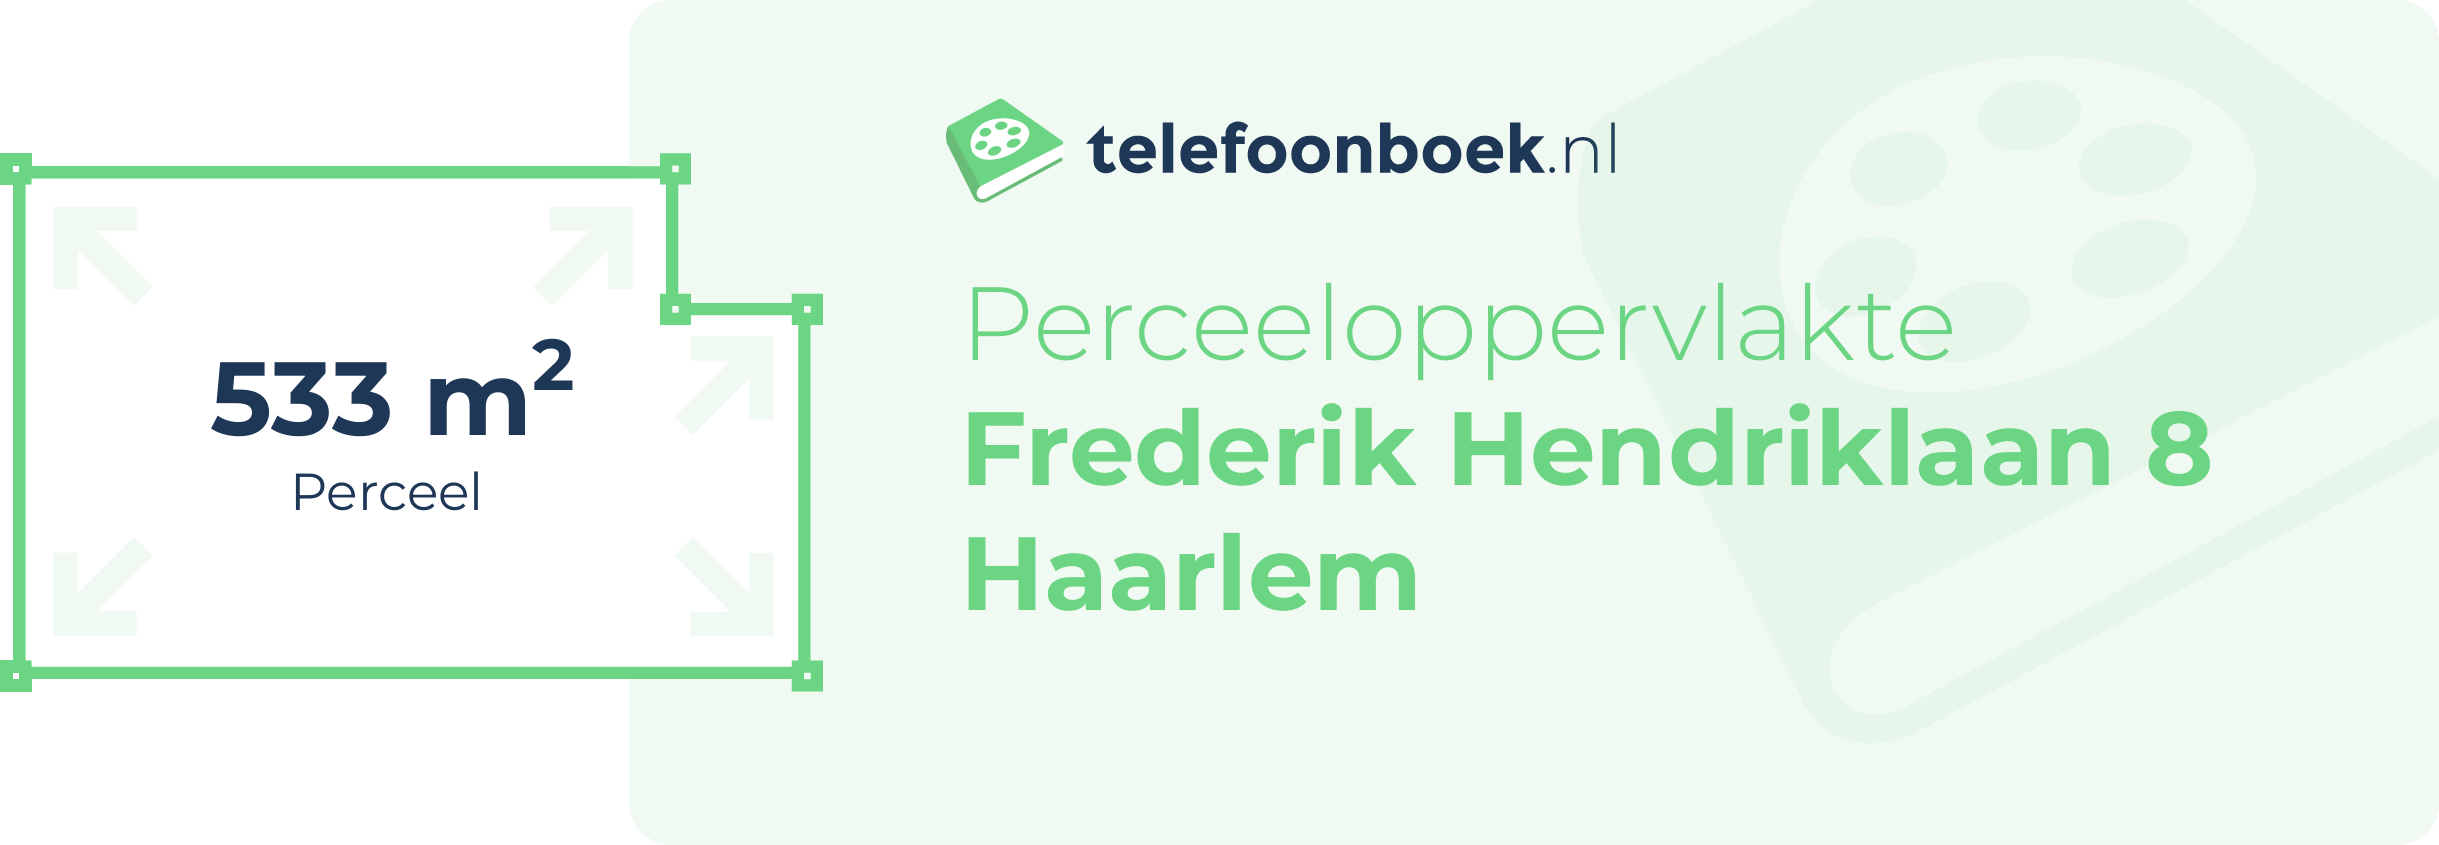 Perceeloppervlakte Frederik Hendriklaan 8 Haarlem